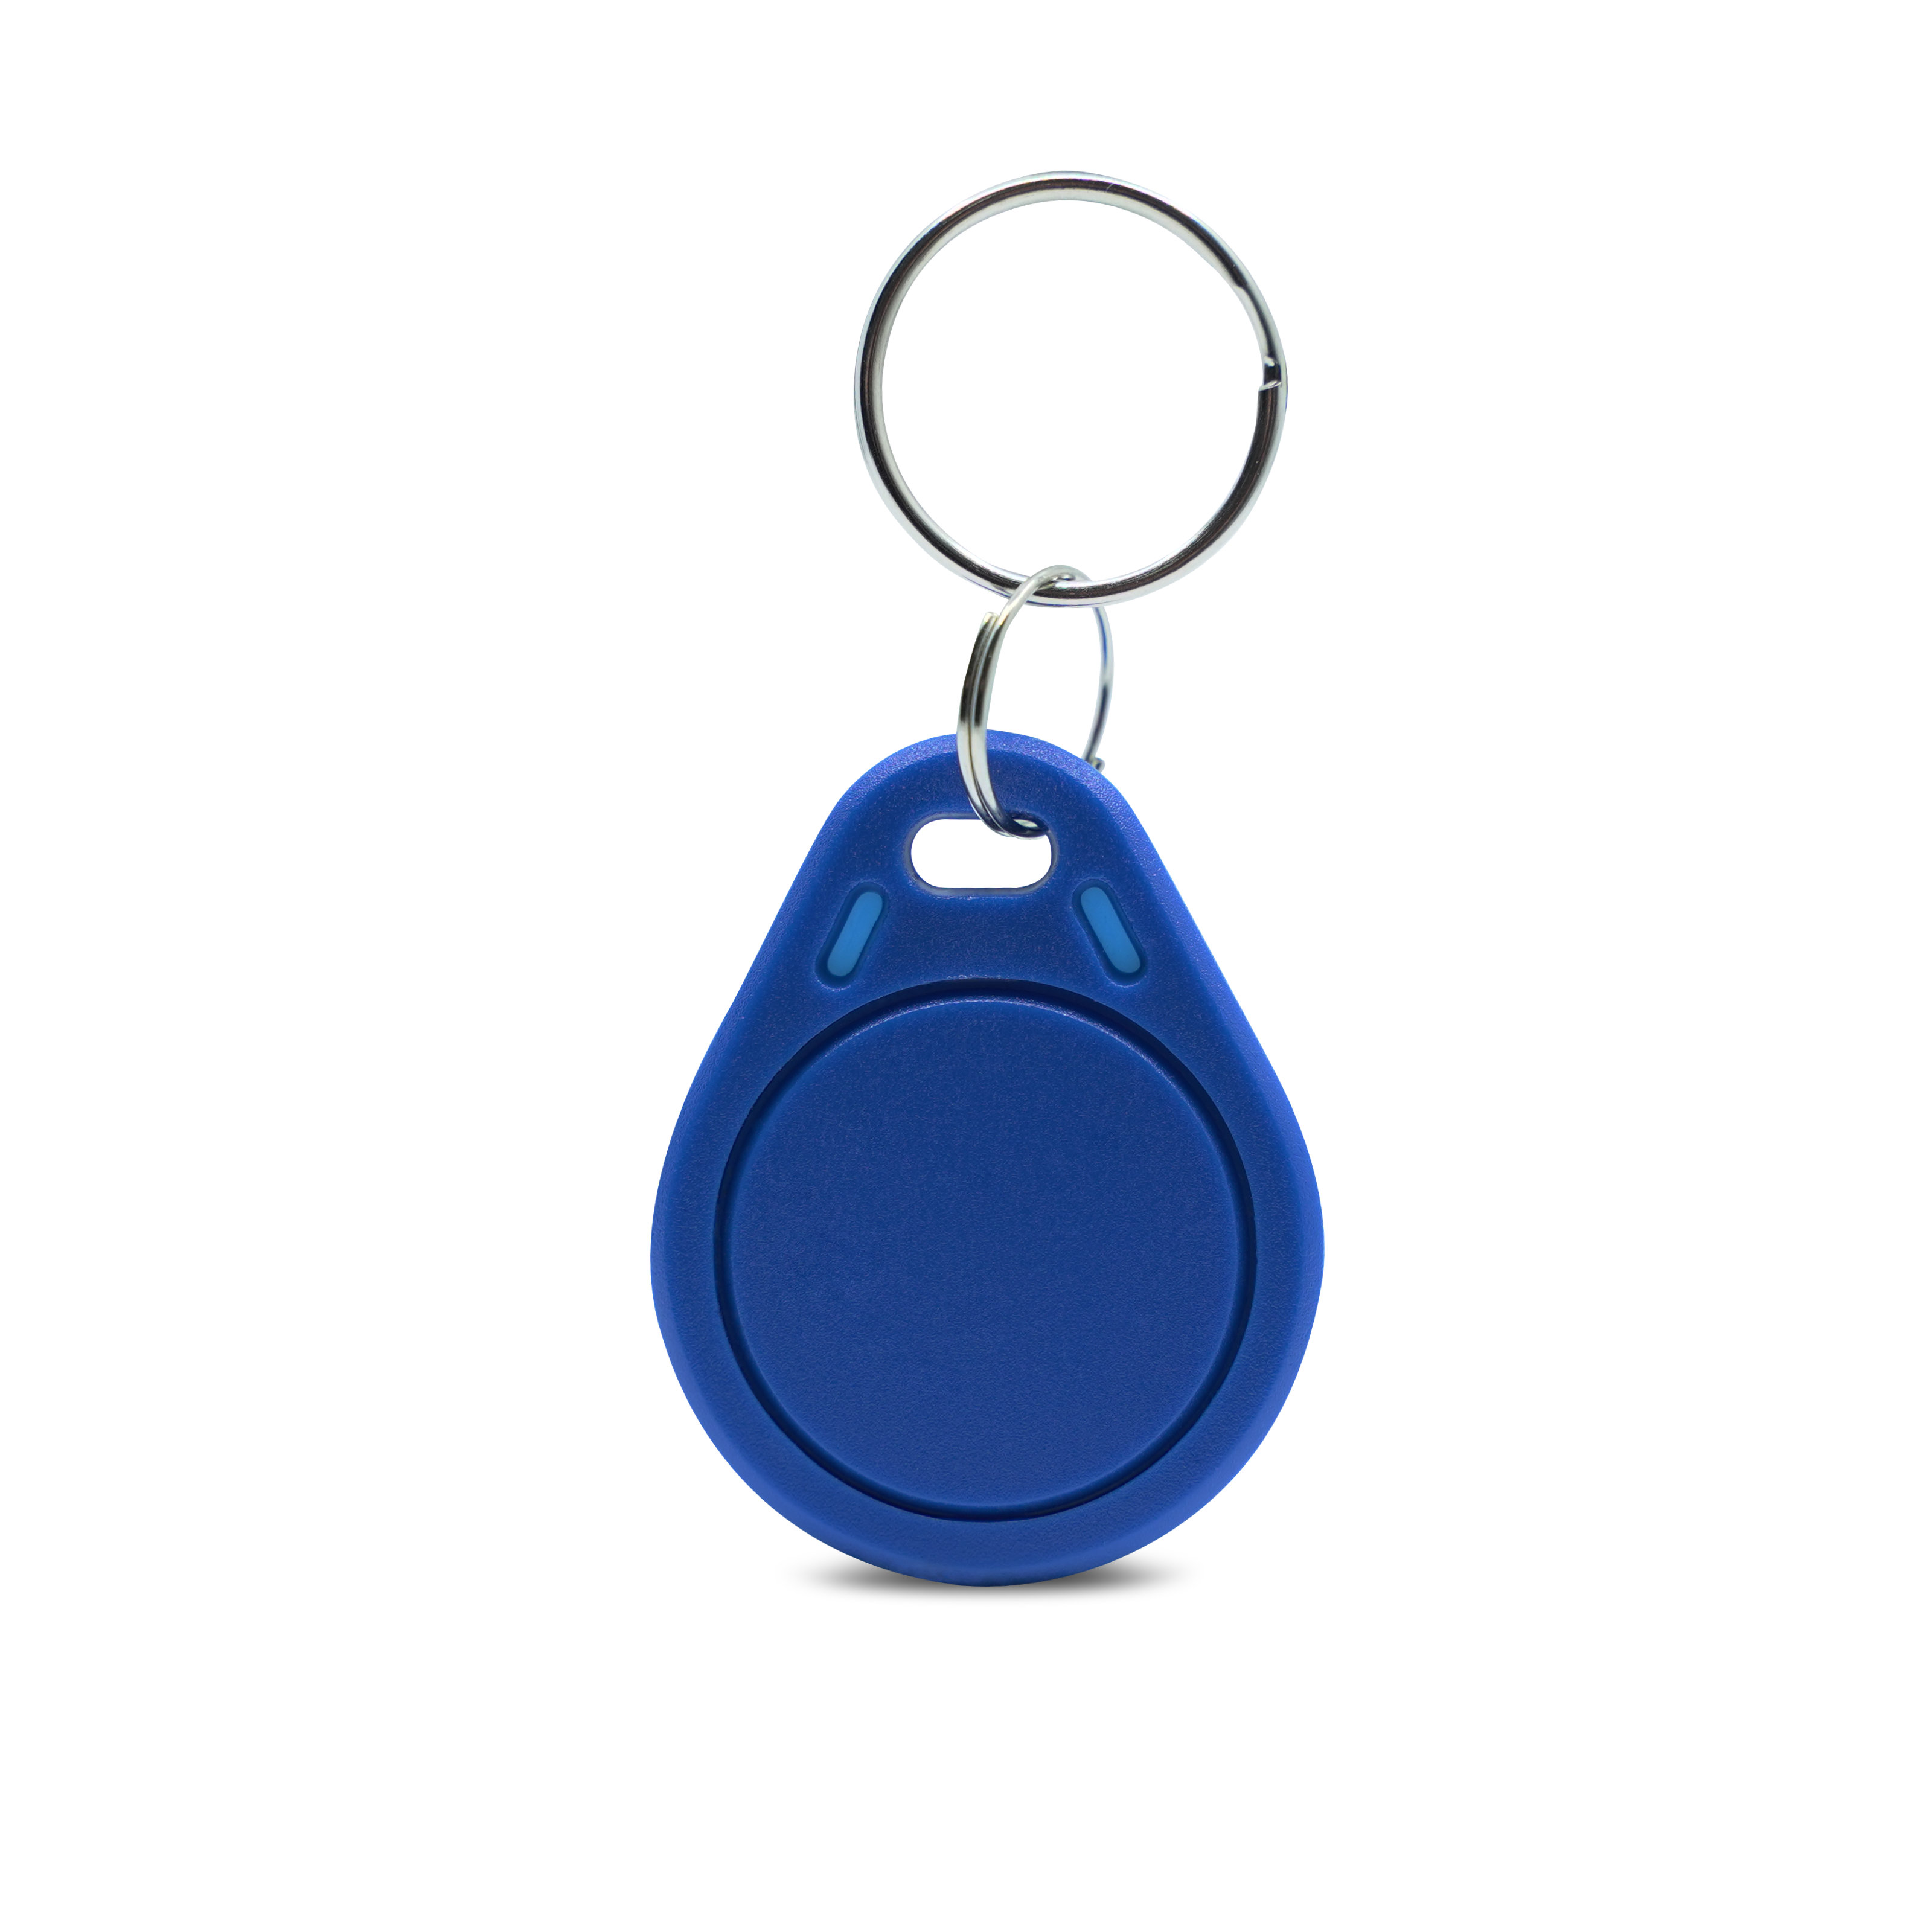 Vorderseite des ABS Schlüsselanhänger in blau